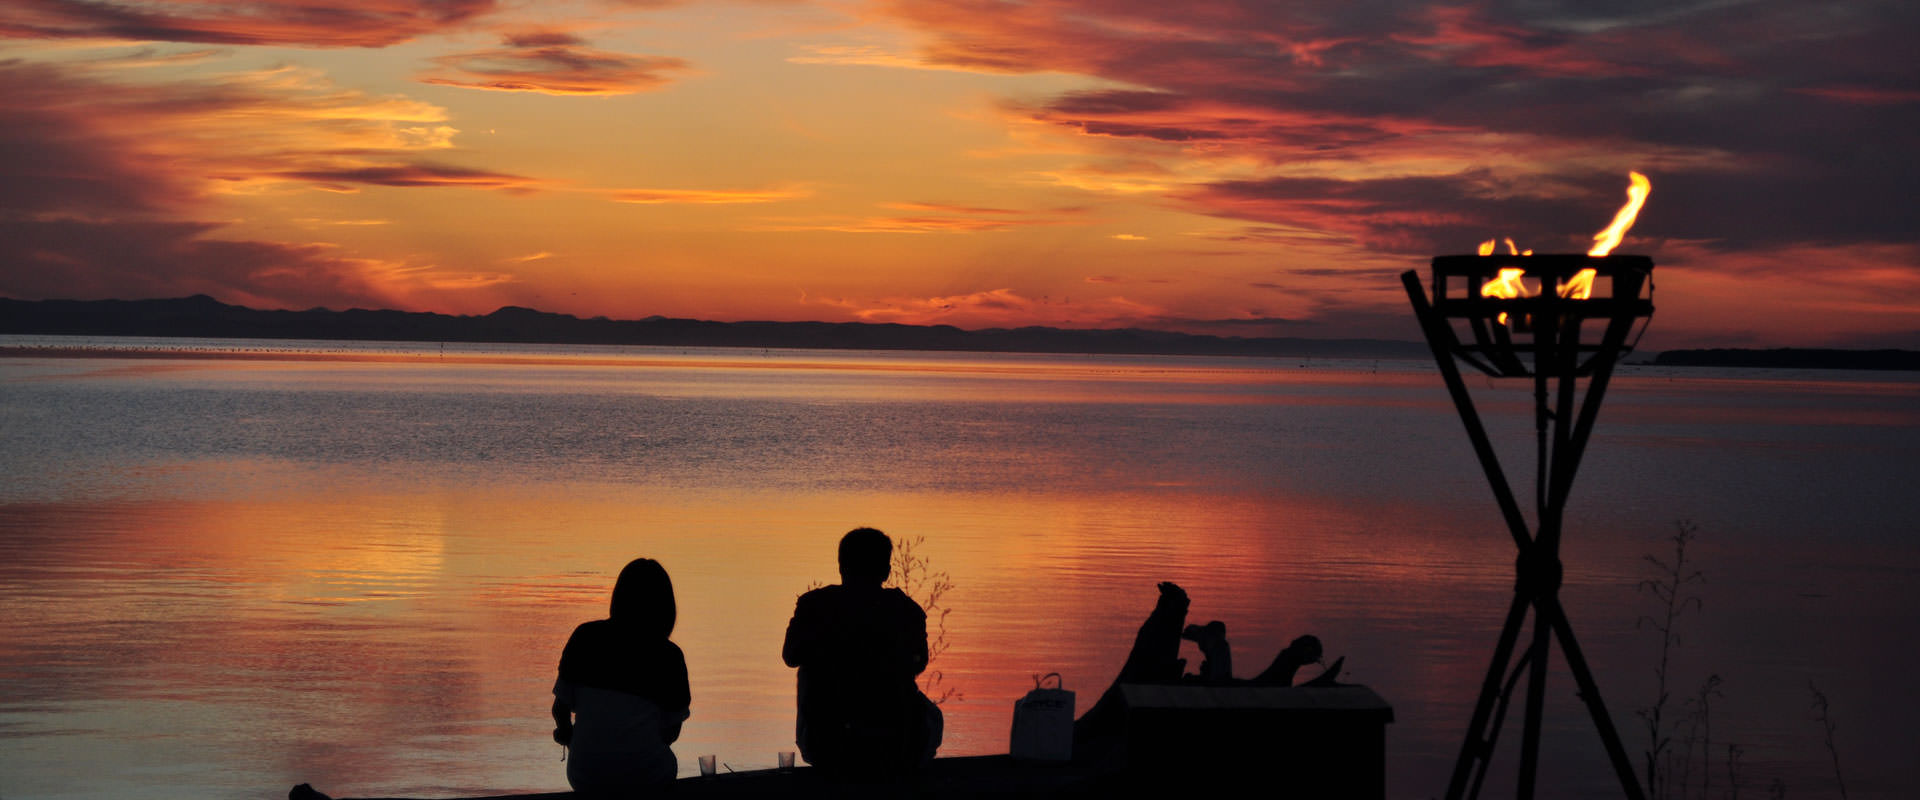 サロマ湖鶴雅リゾート どこにもない感動の夕景を 公式